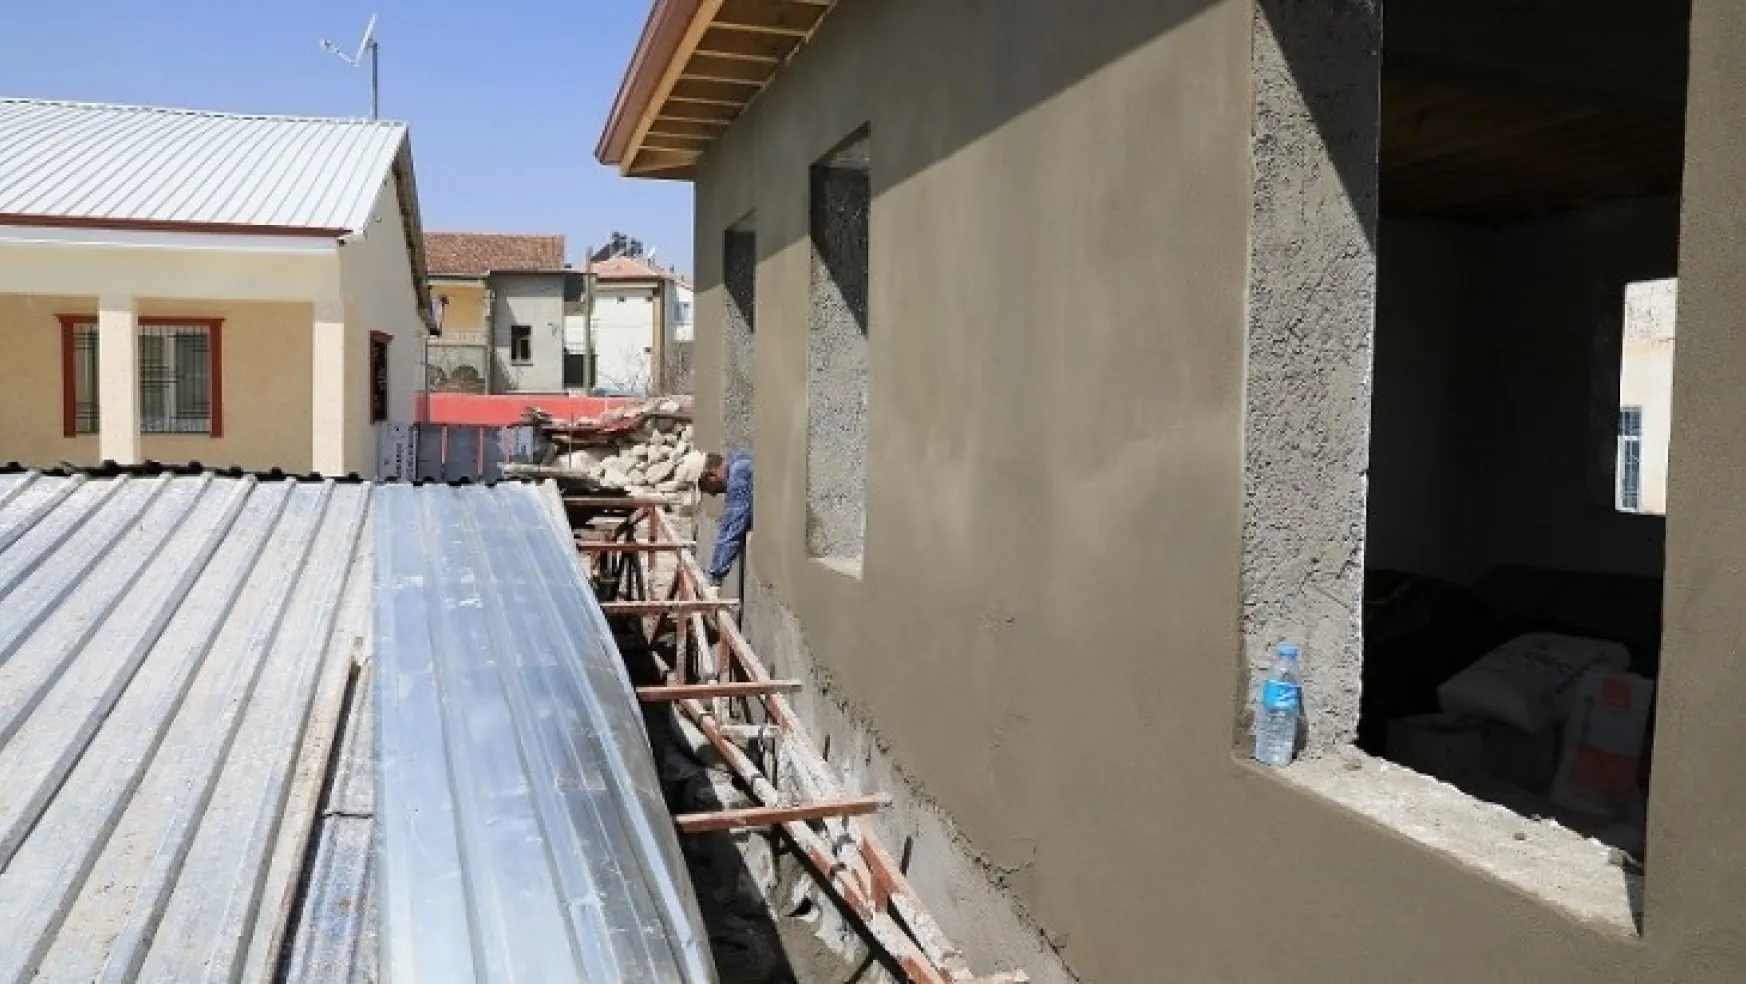 Battalgazi'deki Tarihi Mekanlarda Restorasyon Çalışmaları Sürüyor